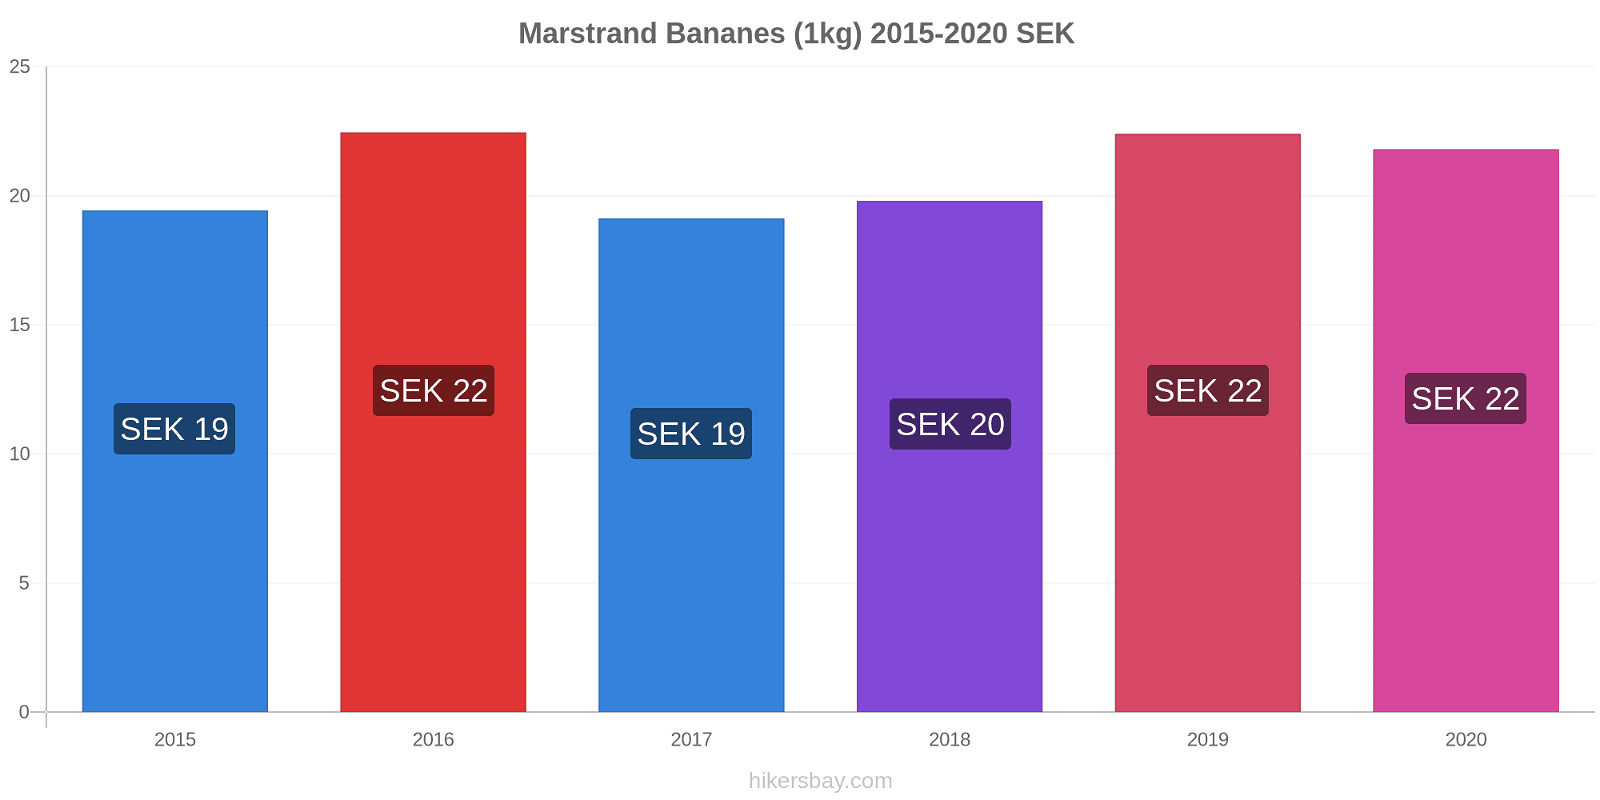 Marstrand changements de prix Bananes (1kg) hikersbay.com